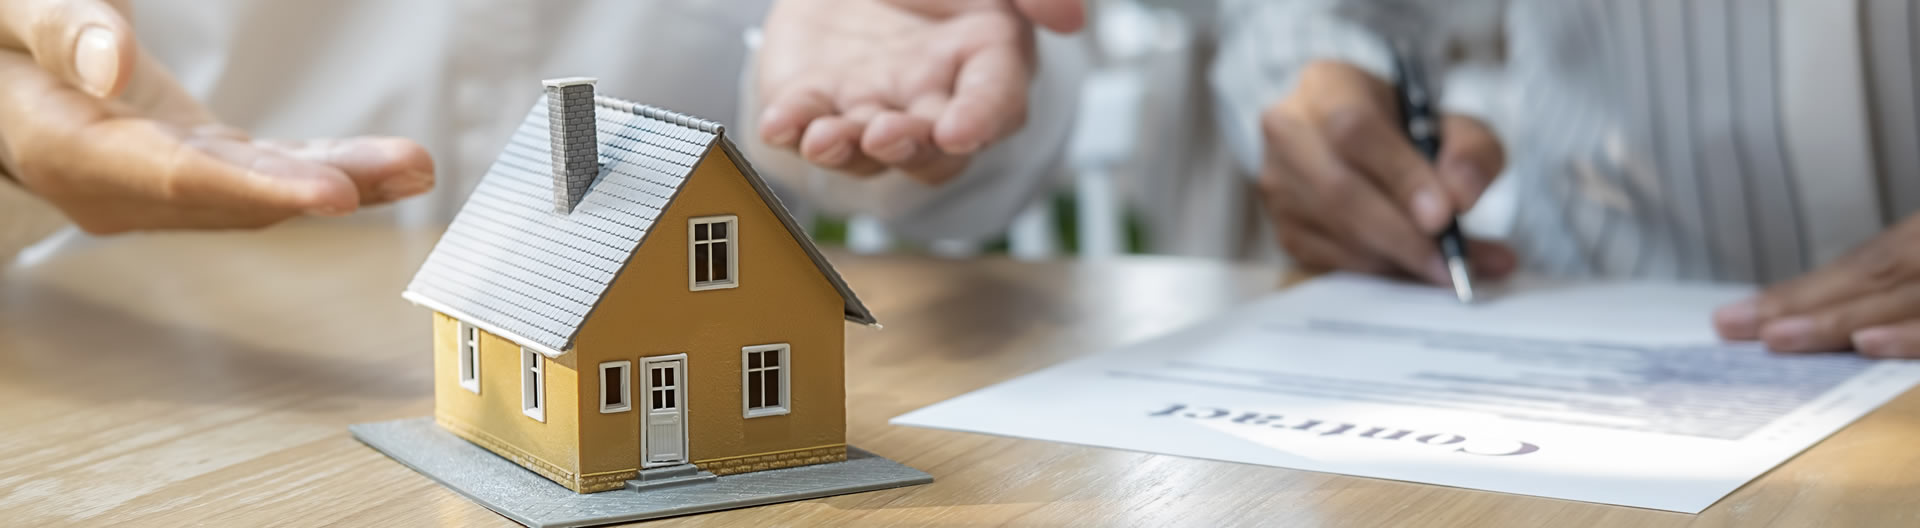 Immobilie absichern - Hausrat-, Gebäude- & Familienversicherung sowie Berufsunfähigkeitsversicherung